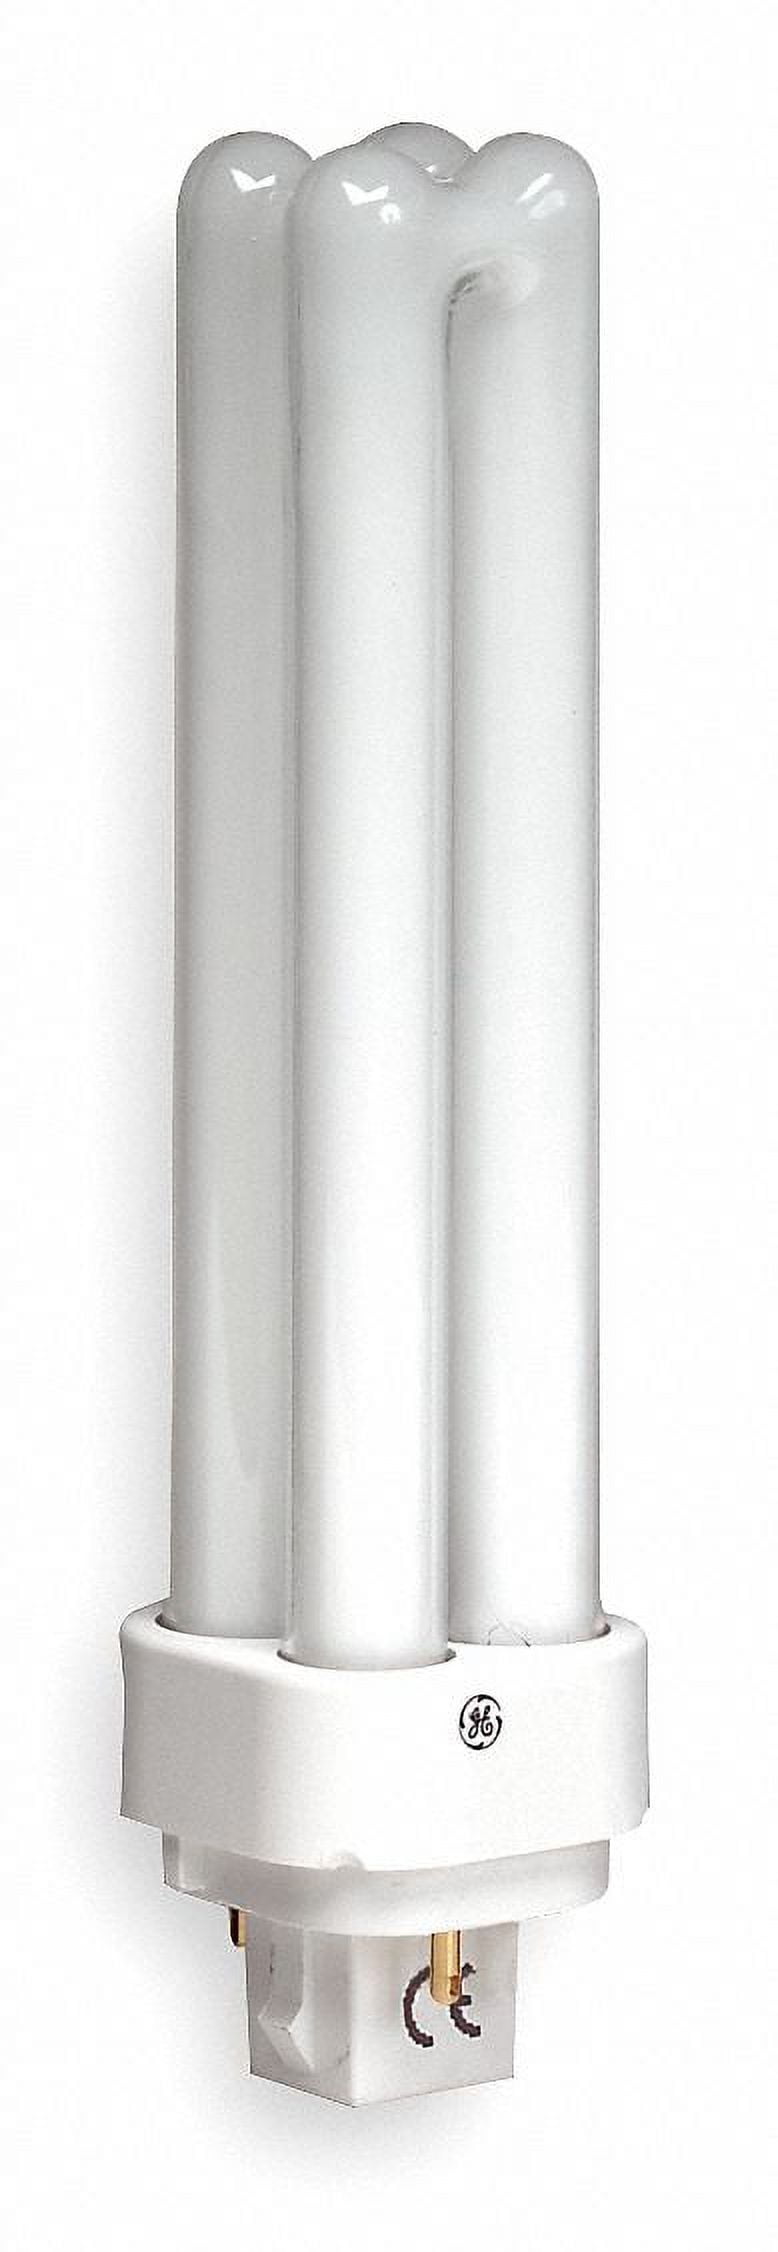 Philips 26w Double Tube 2-Pin G24D-3 3500K White Fluorescent Light